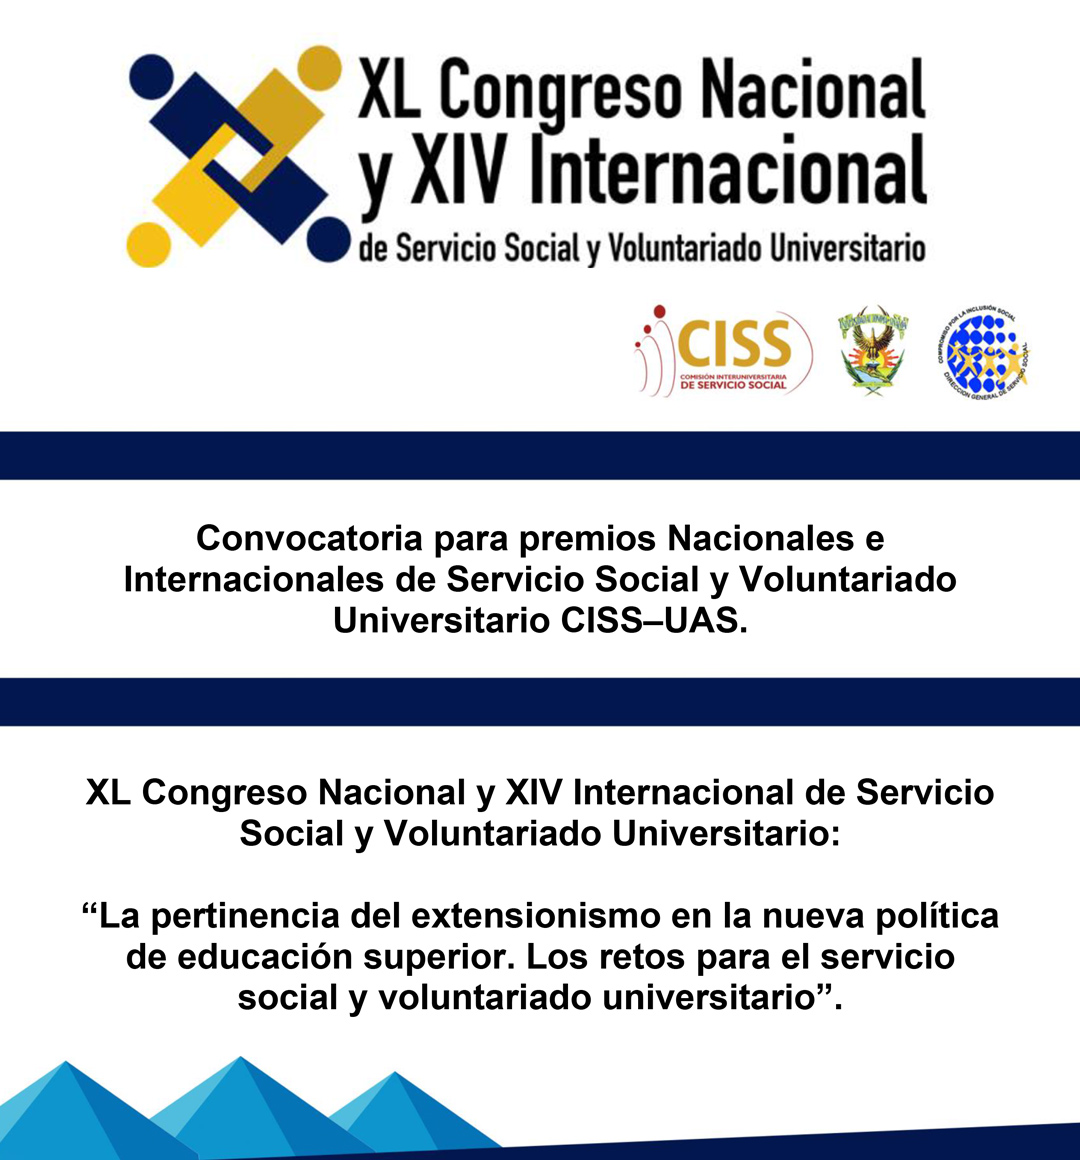 XL Congreso Nacional y XIV Internacional de Servicio Social y Voluntariado Universitario